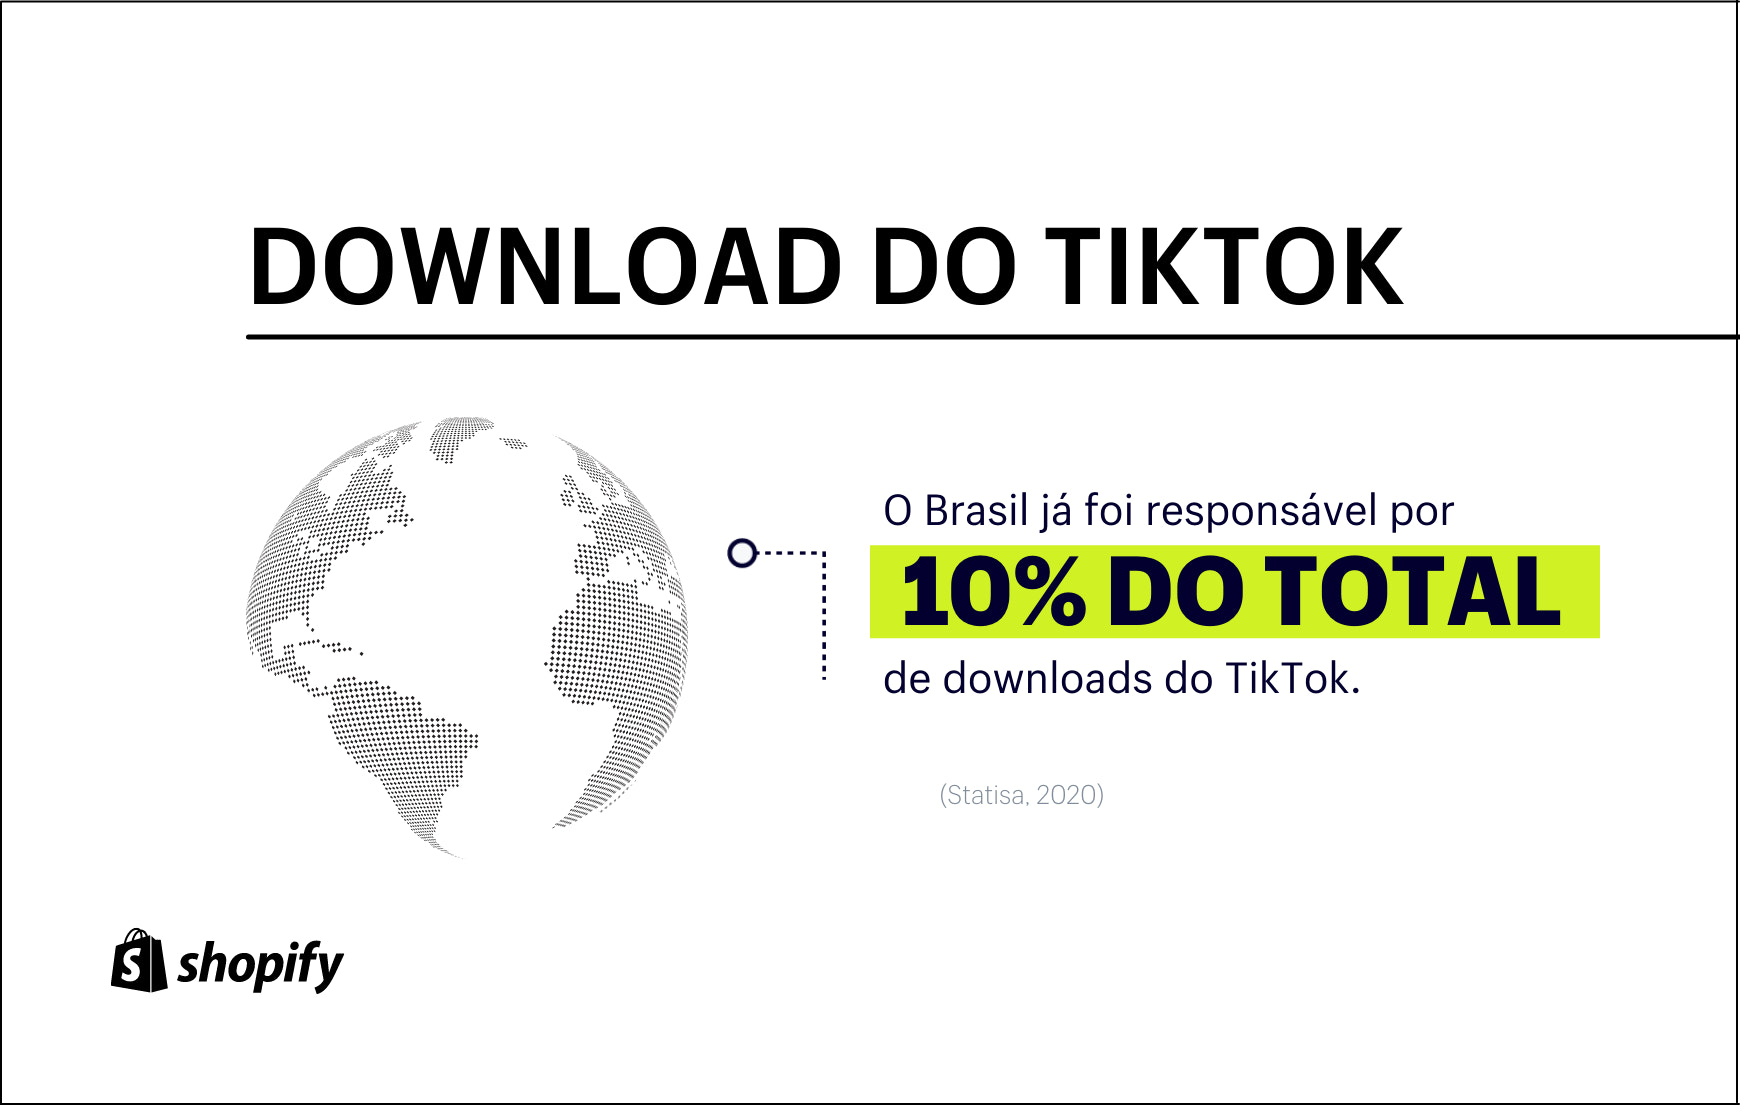 oq significa ko｜Pesquisa do TikTok